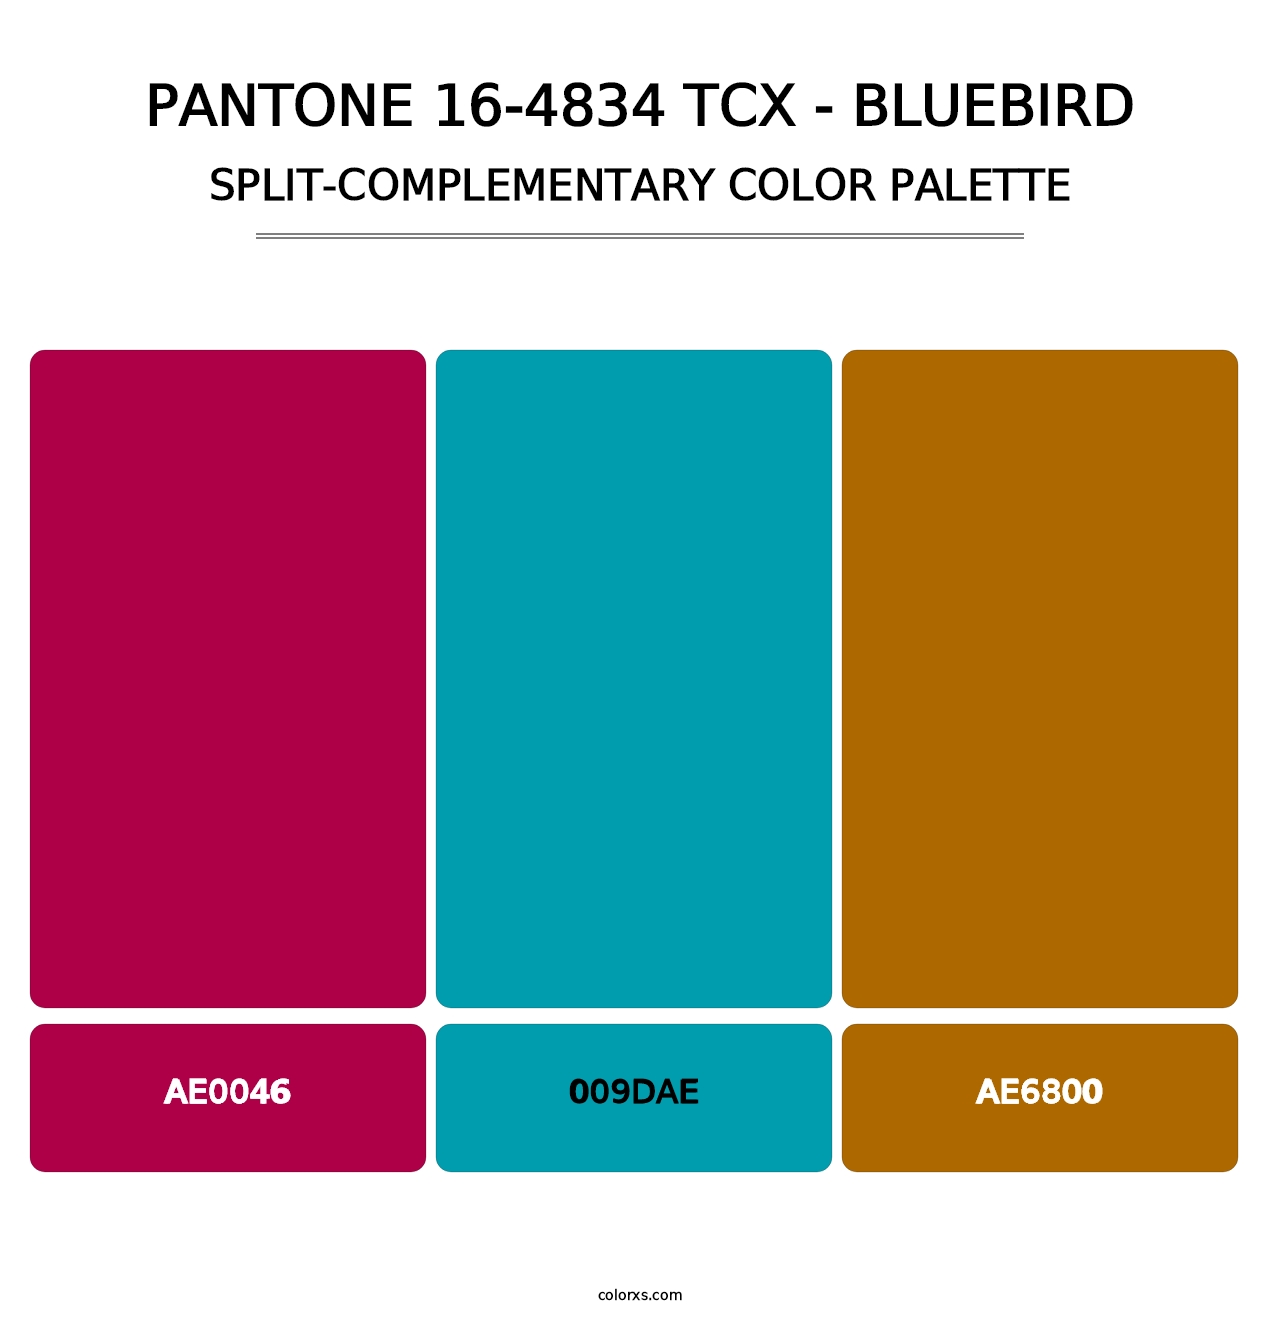 PANTONE 16-4834 TCX - Bluebird - Split-Complementary Color Palette